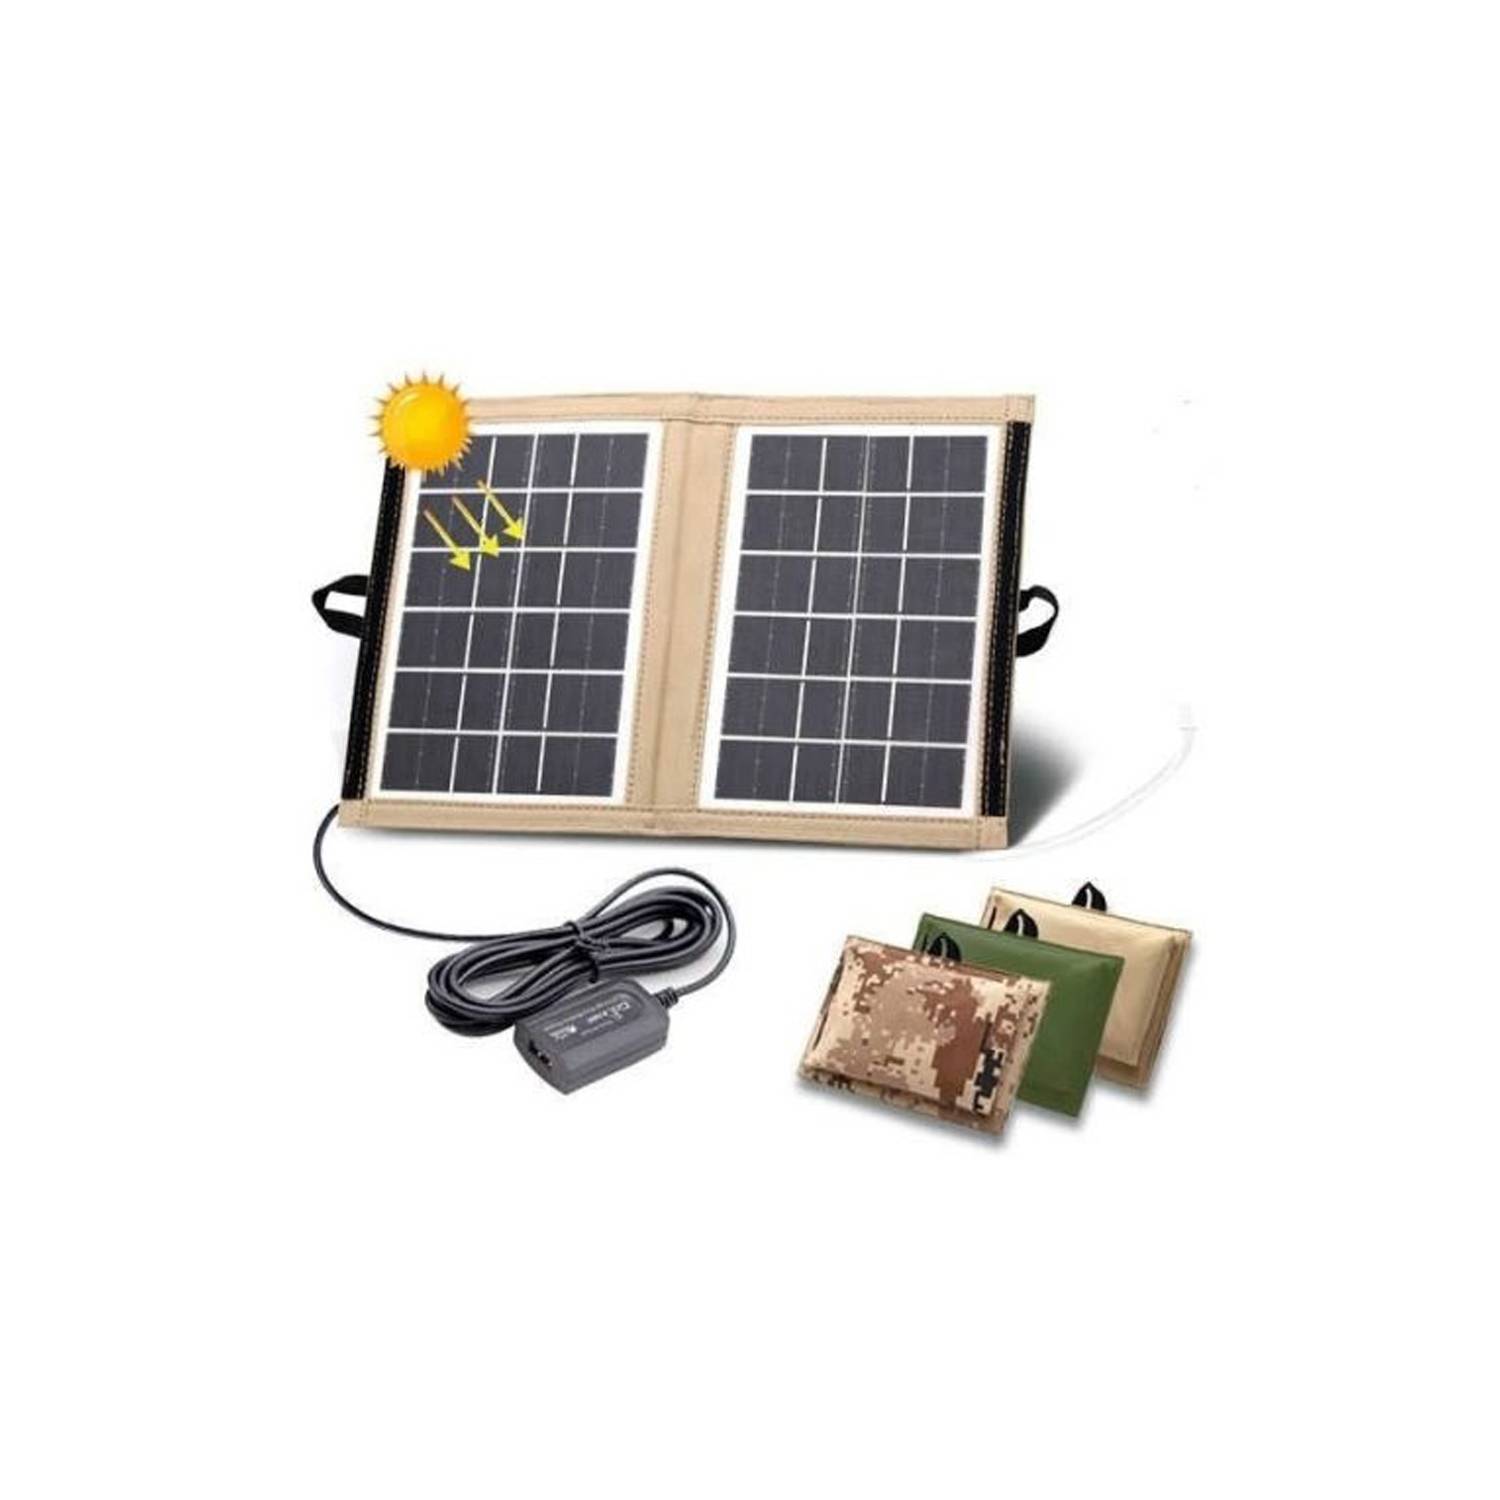 Panel Solar Plegable y Fuente de Energía Portátil (PPS) - Revista